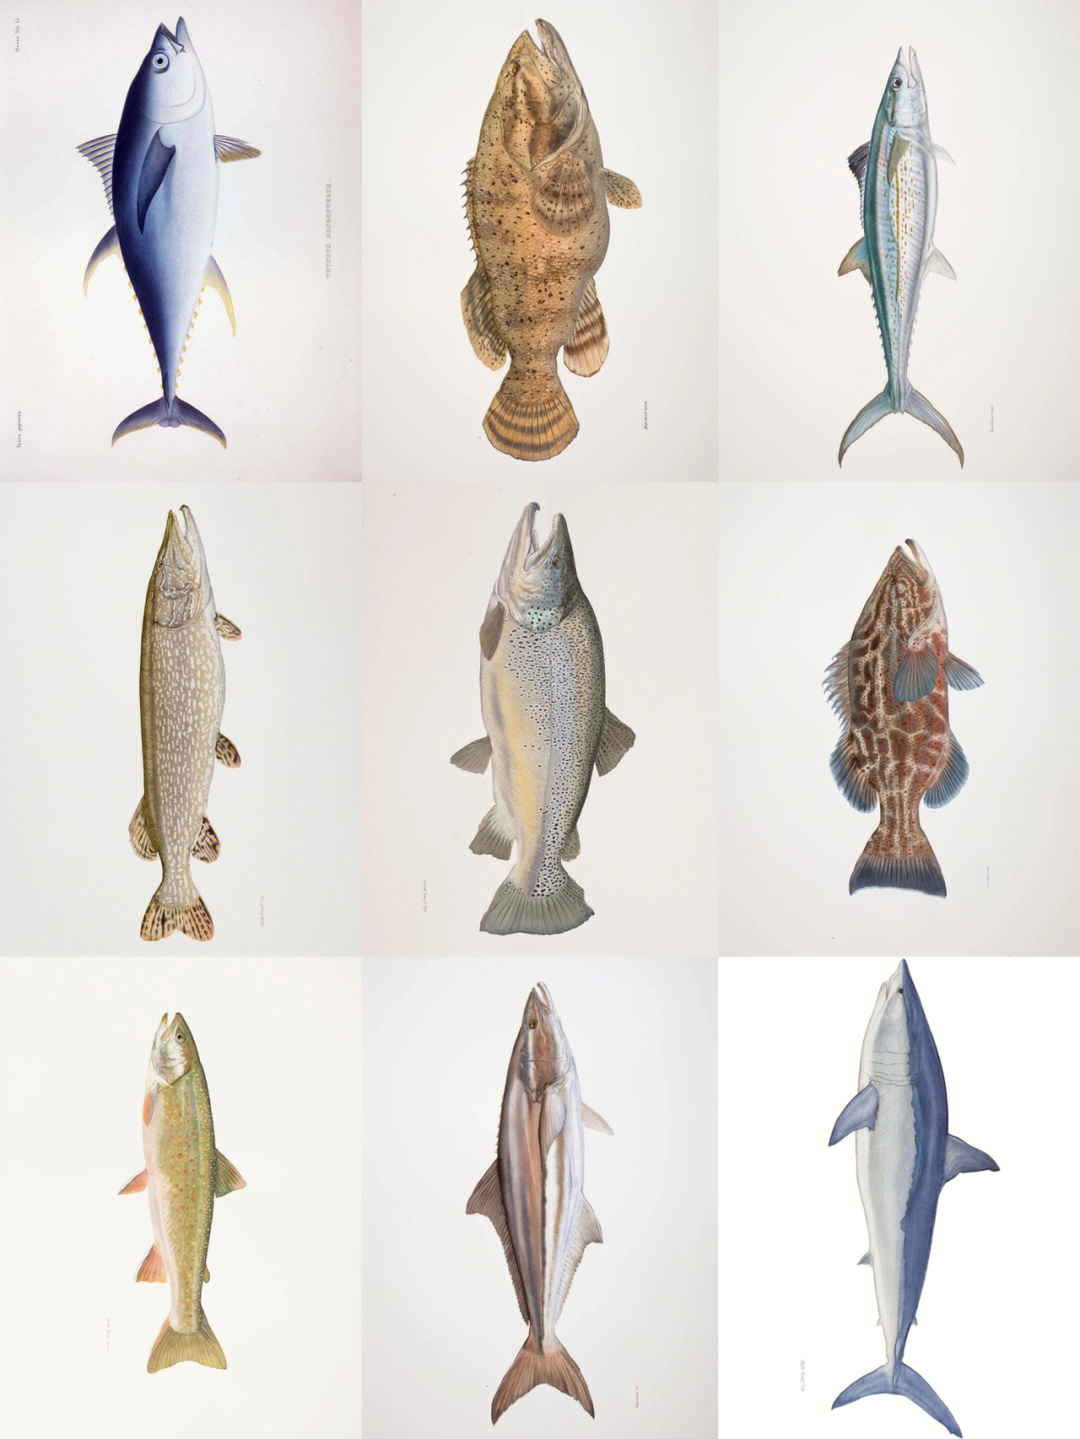 鱼的名字第一行从左至右:金枪鱼,石斑鱼,鲅鱼第二行从左至右:狗鱼